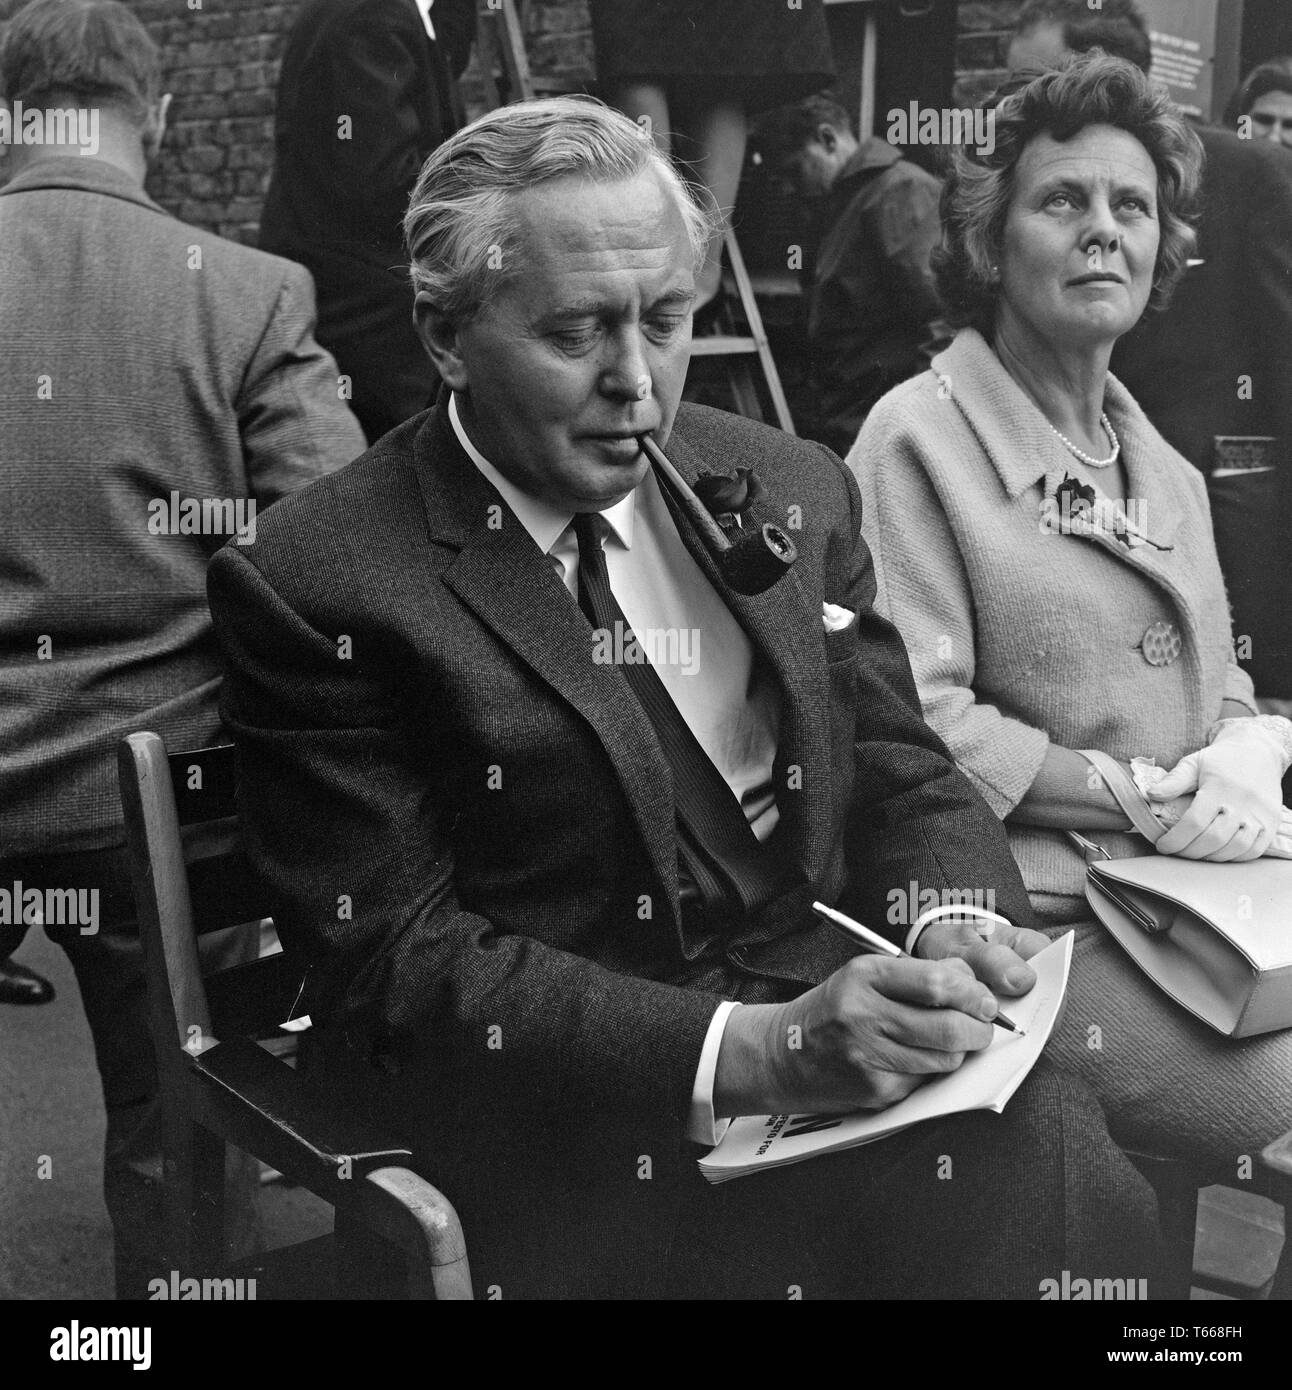 Homme politique et, finalement, le premier ministre Harold Wilson, faisait campagne dans Lewisham, dans le sud de Londres, au cours de l'élection générale britannique de 1964. Son épouse, Mary, assise à côté de lui. Banque D'Images